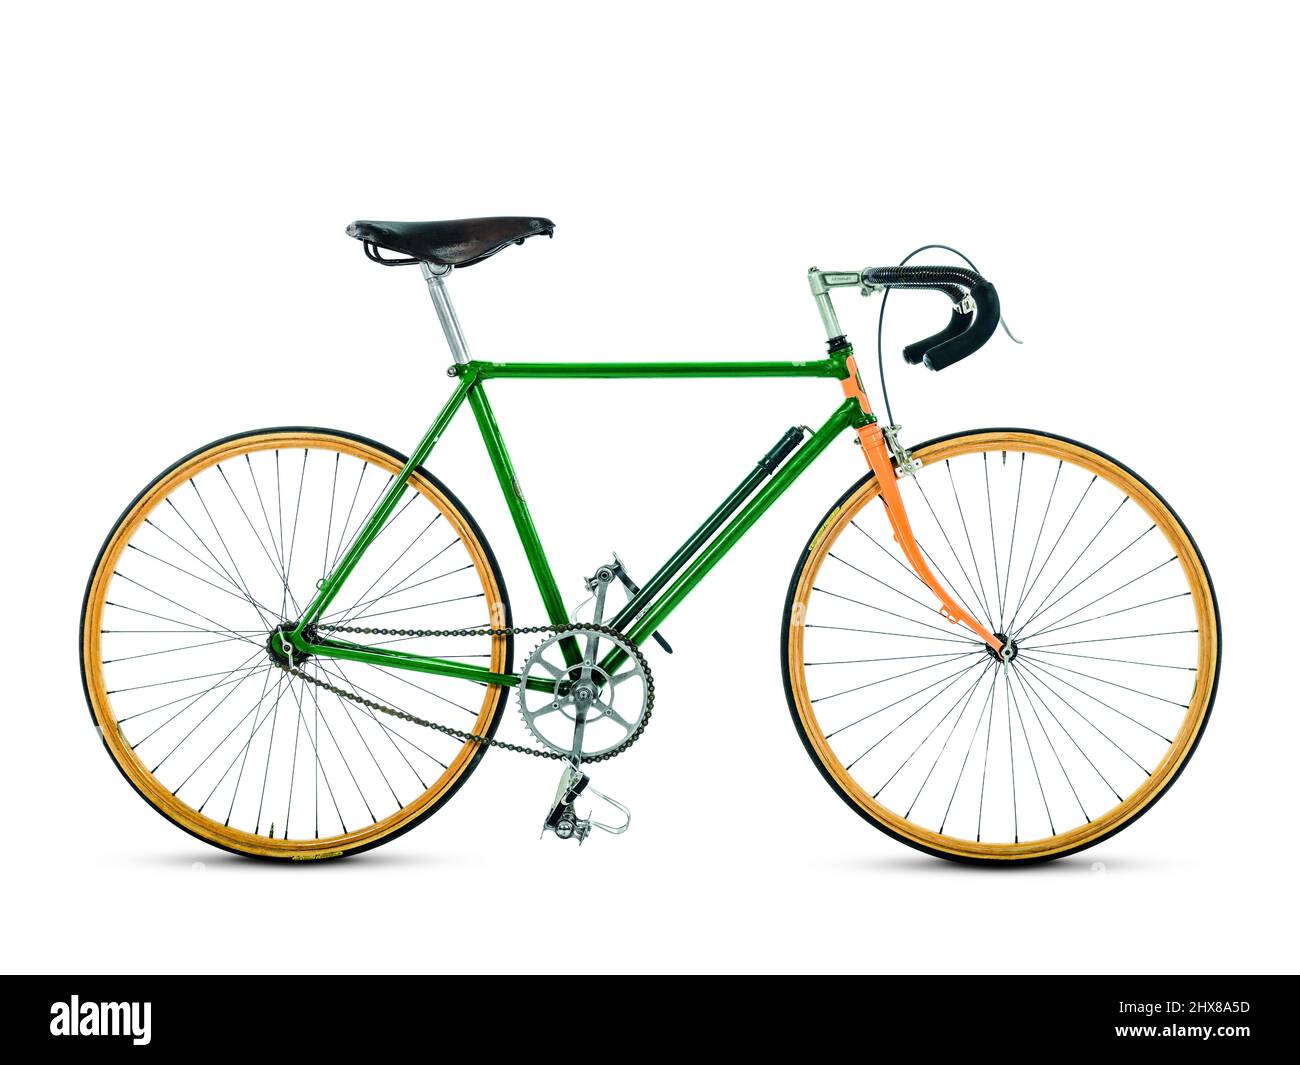 C F Davey's Racing vélo, 1932, vue latérale - côté roue, reconstruit dans la garniture de course avec des garnitures contemporaines, y compris des jantes d'érable constrictor. Frame Builder, Ted Woodrol de leader cycles. Banque D'Images